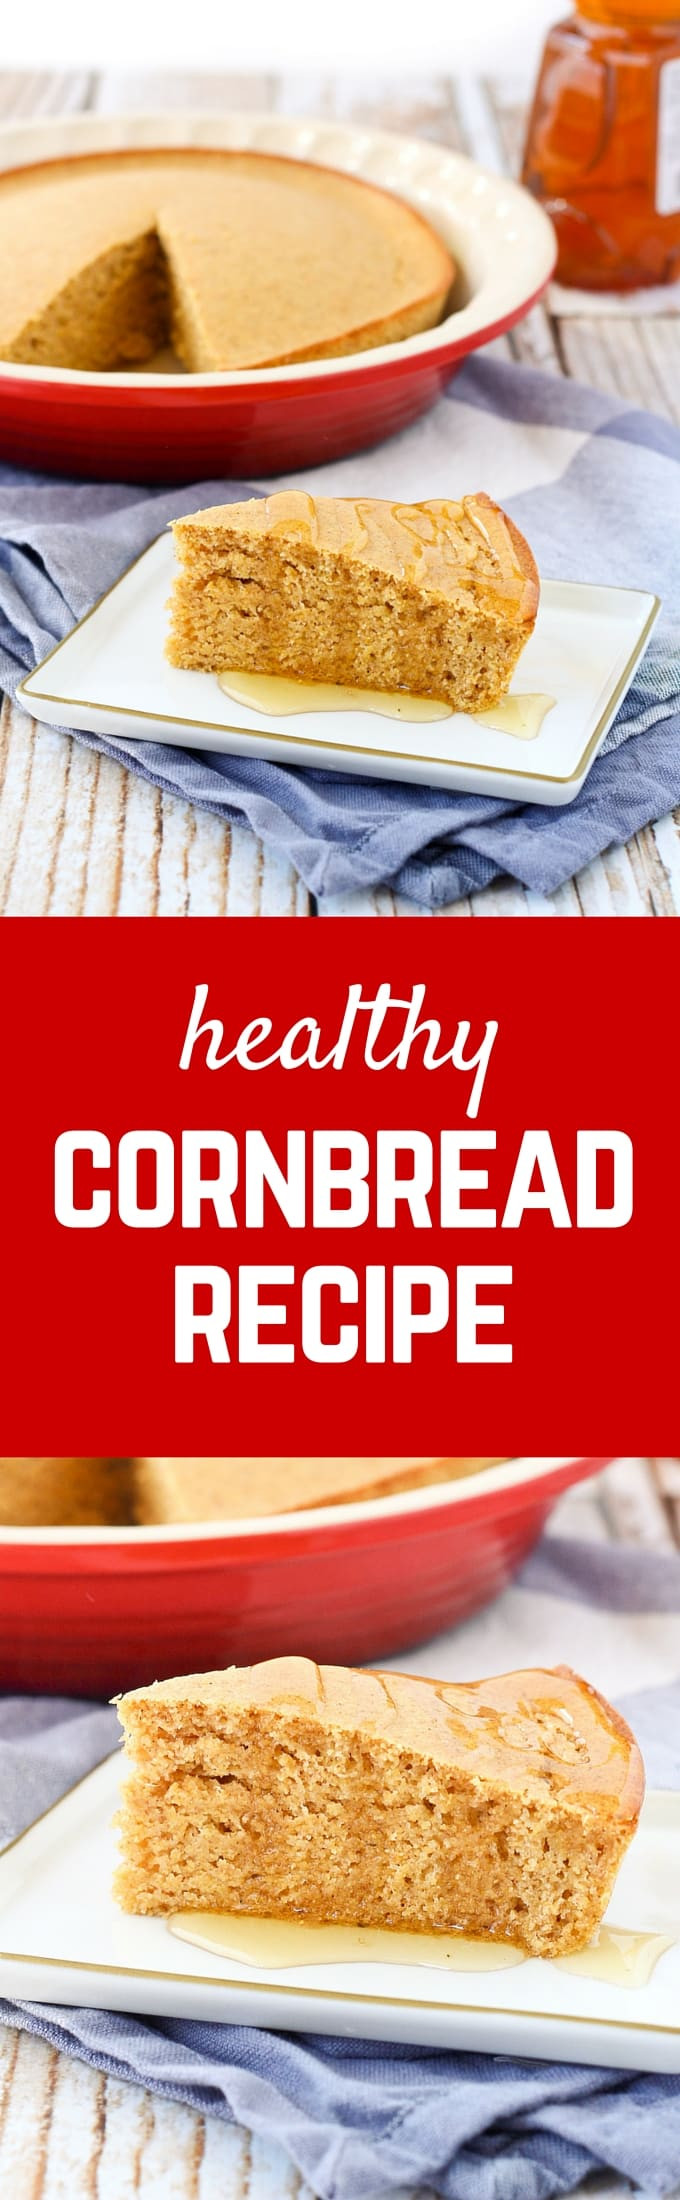 Healthy Corn Bread
 Healthy Cornbread Recipe whole wheat with VIDEO